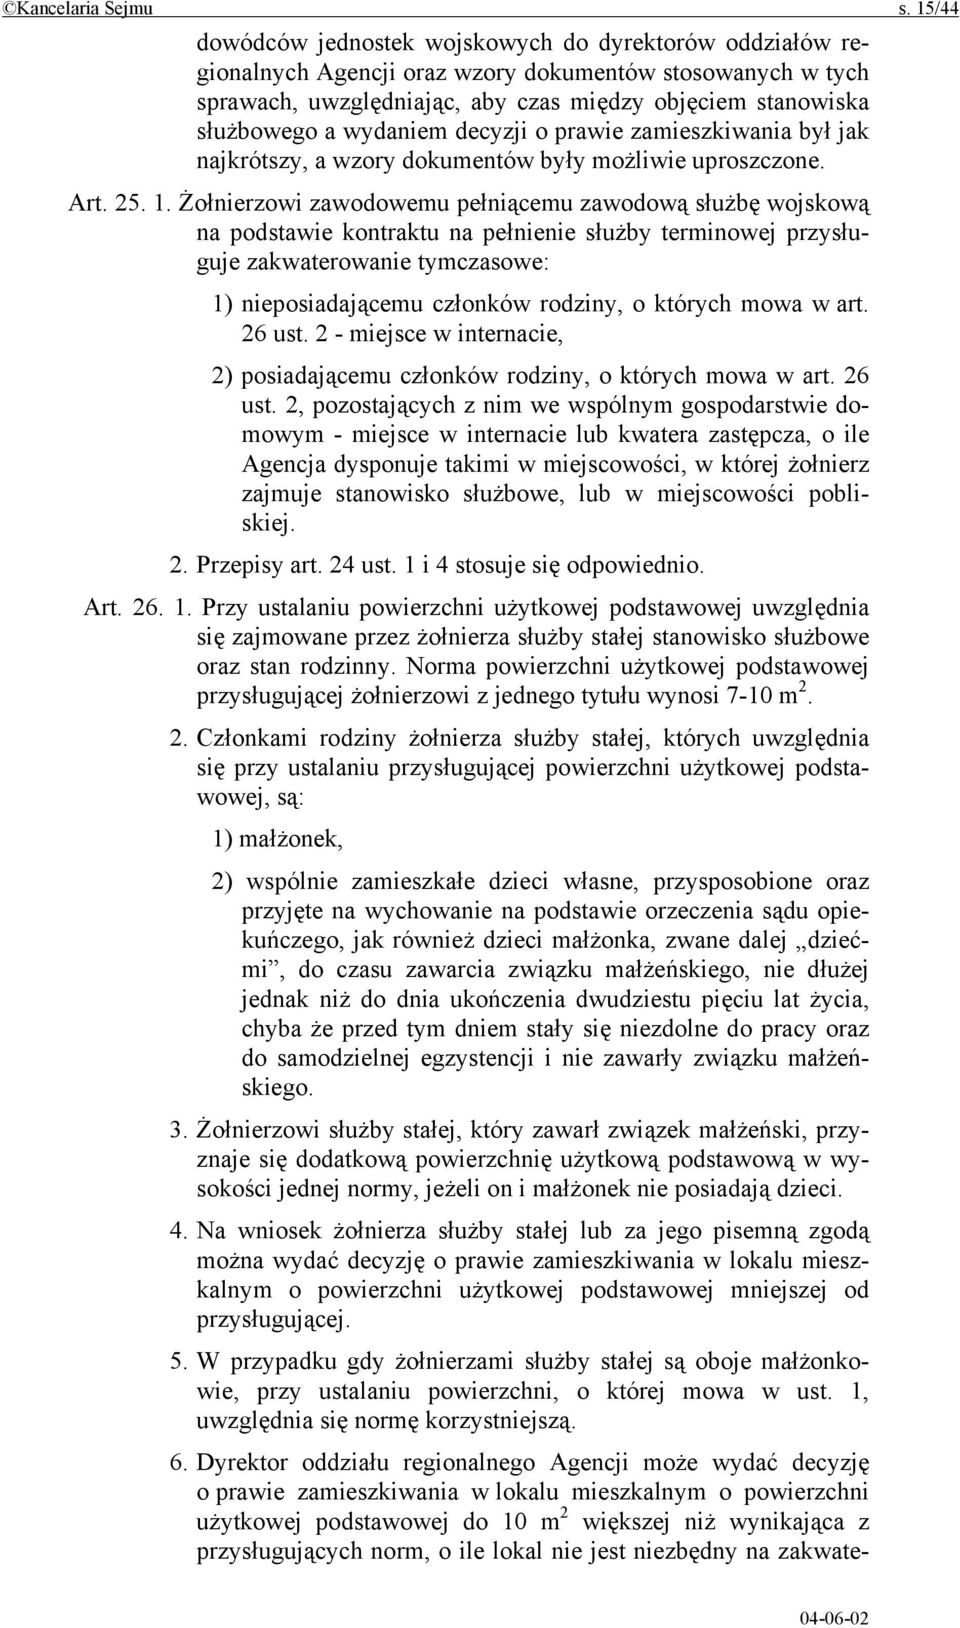 wydaniem decyzji o prawie zamieszkiwania był jak najkrótszy, a wzory dokumentów były możliwie uproszczone. Art. 25. 1.